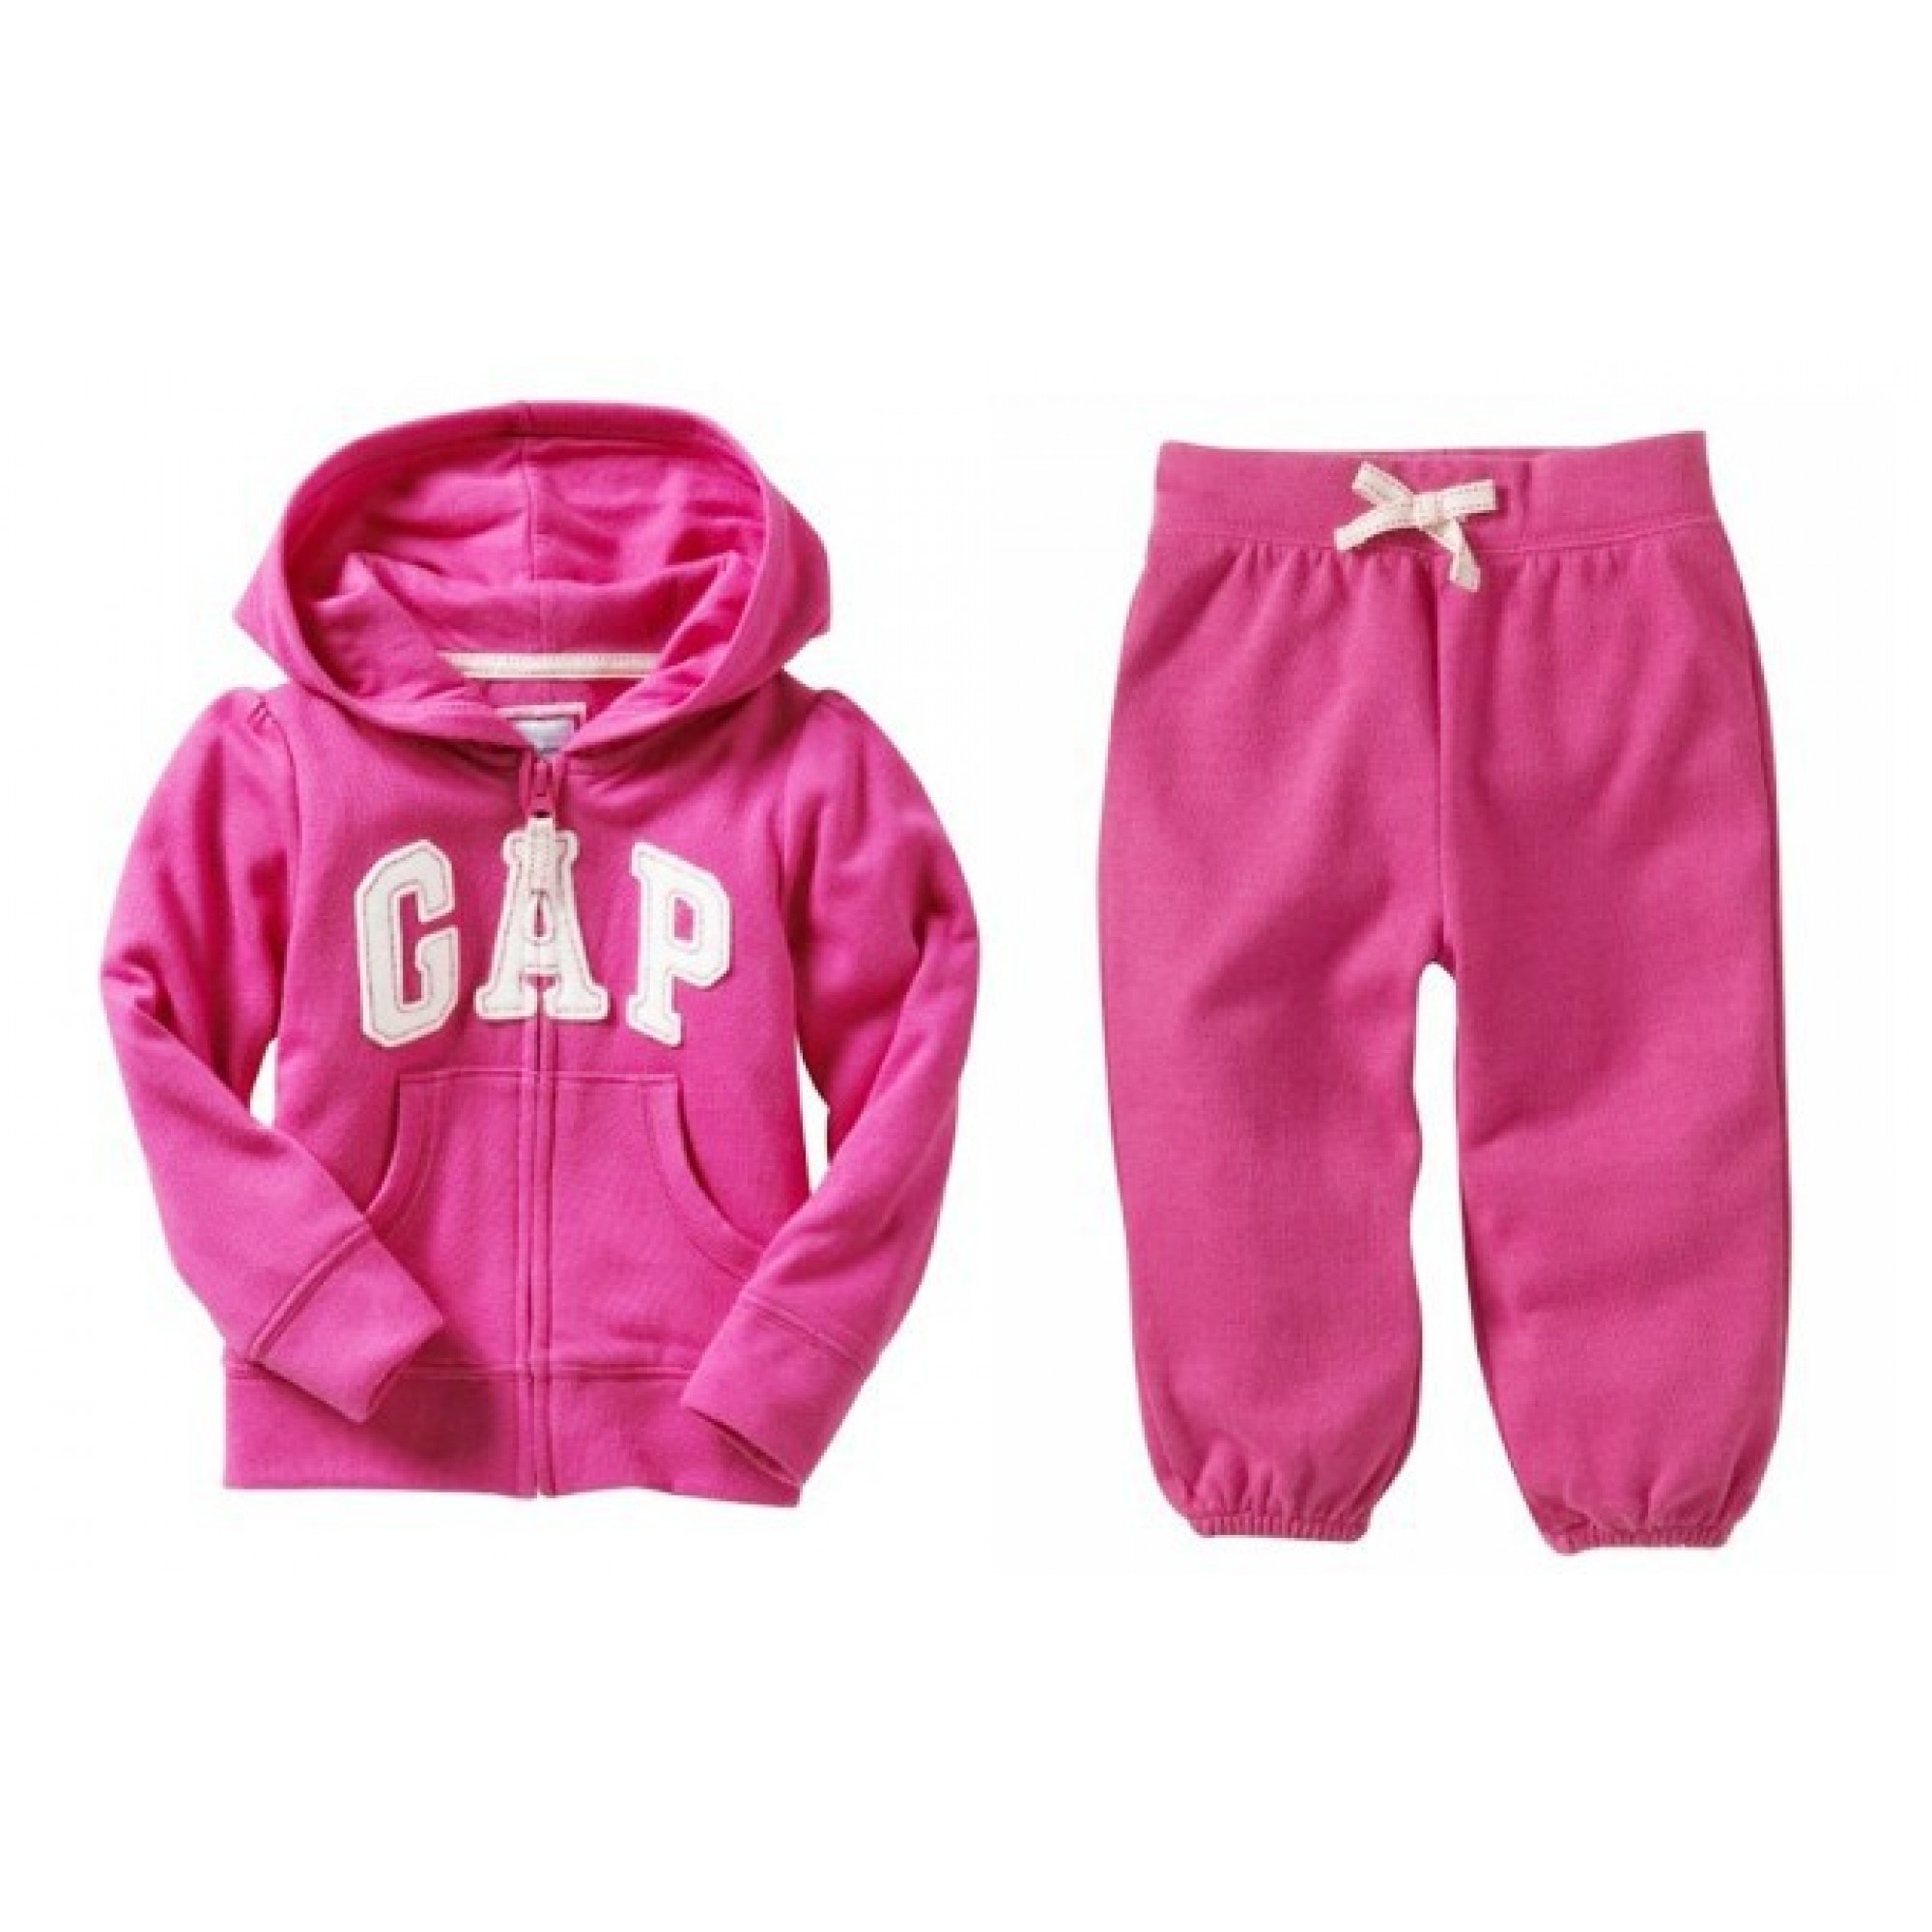 Костюм детские розовые. Костюм gap детский. Костюм gap розовый. Детский костюм гап. Костюм спортивный детский gap розовый.